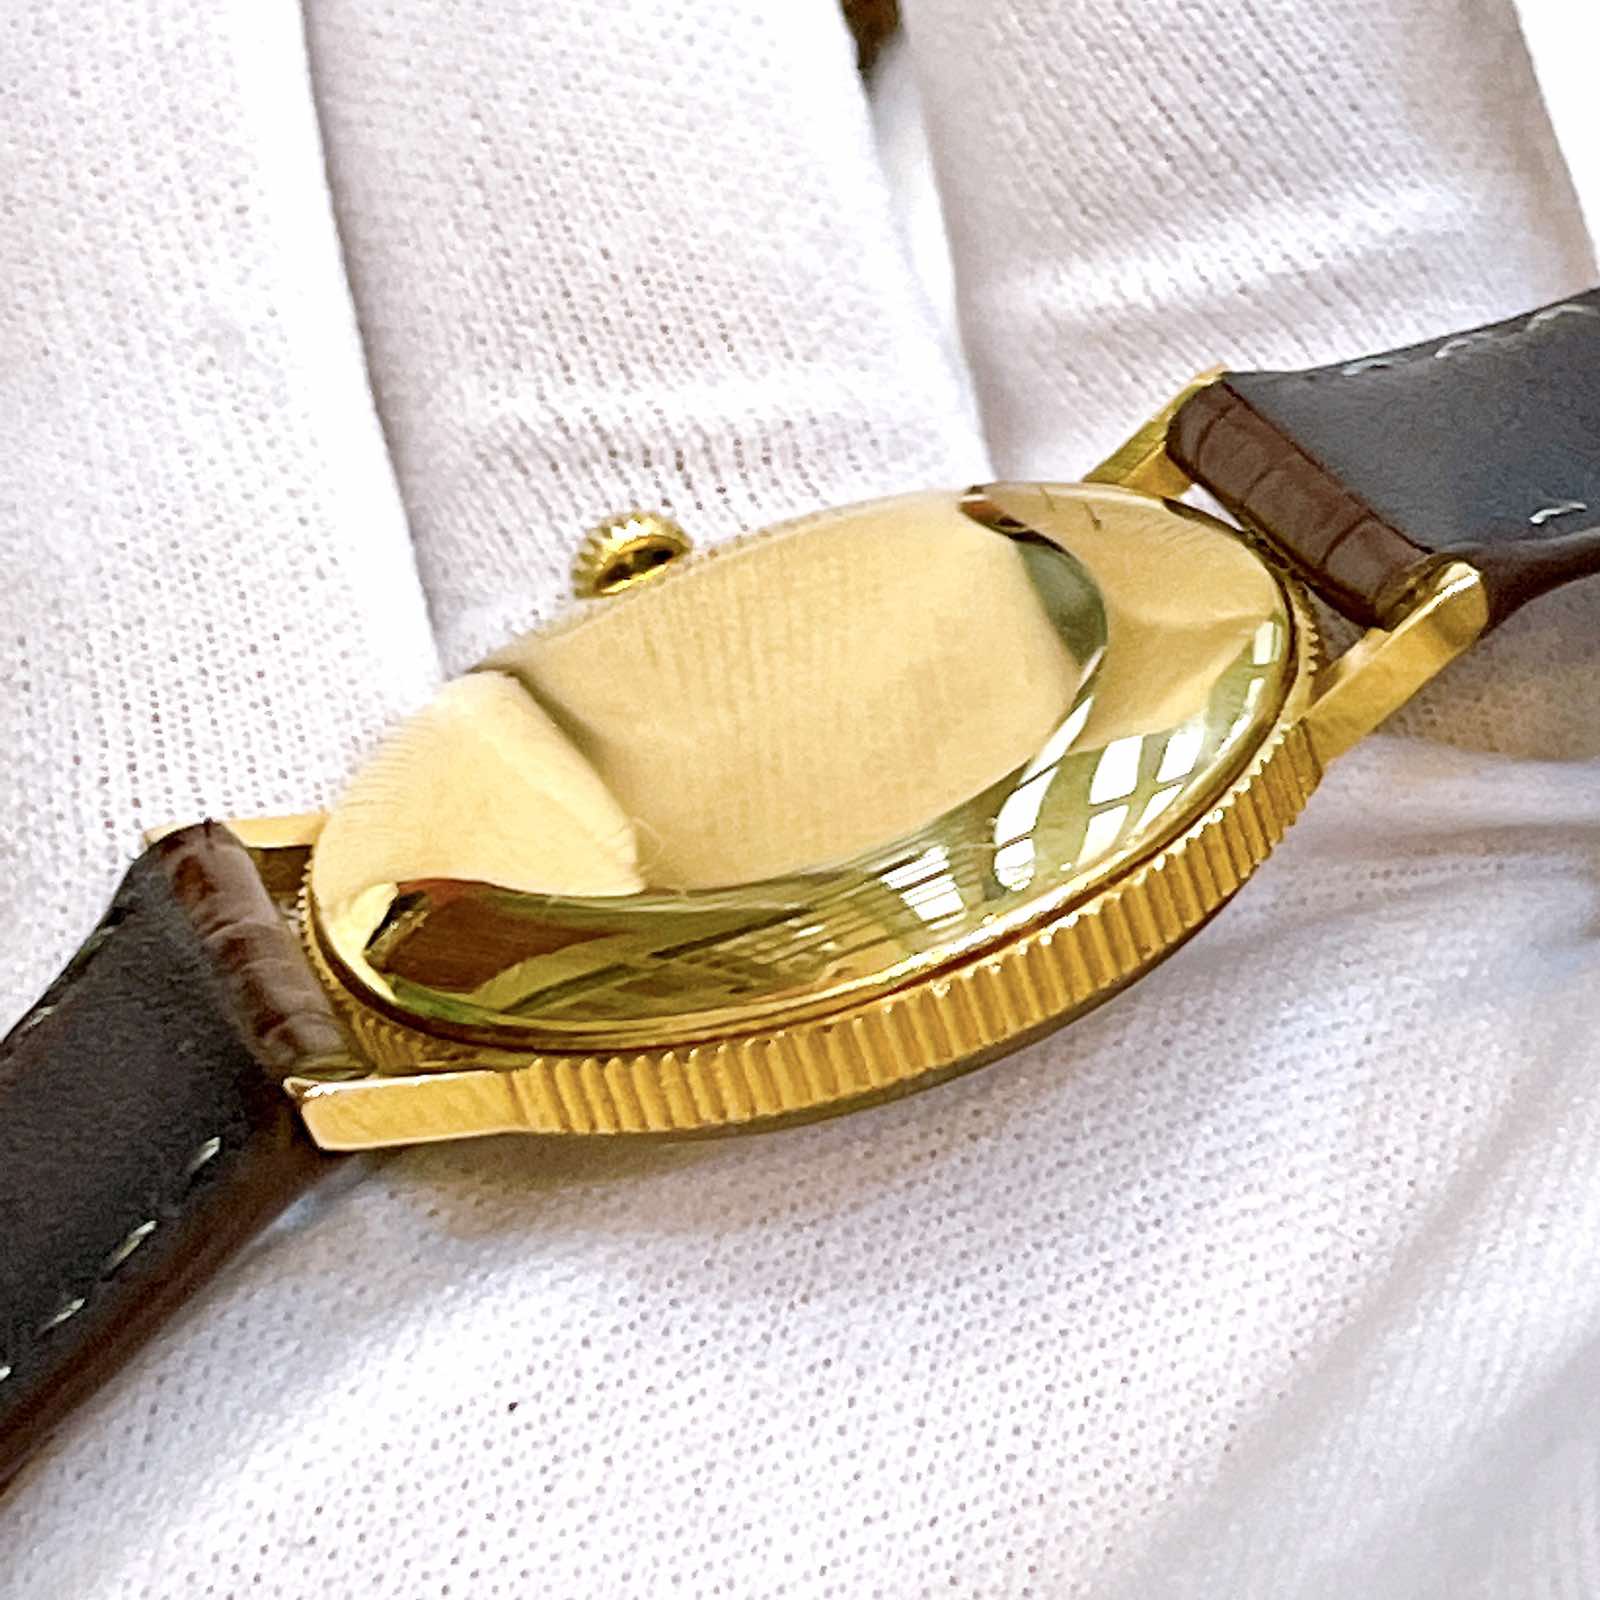 Đồng hồ Tressa lên dây lacke vàng 18k đồng tiền siêu mỏng cực đẹp chính hãng Thụy Sĩ